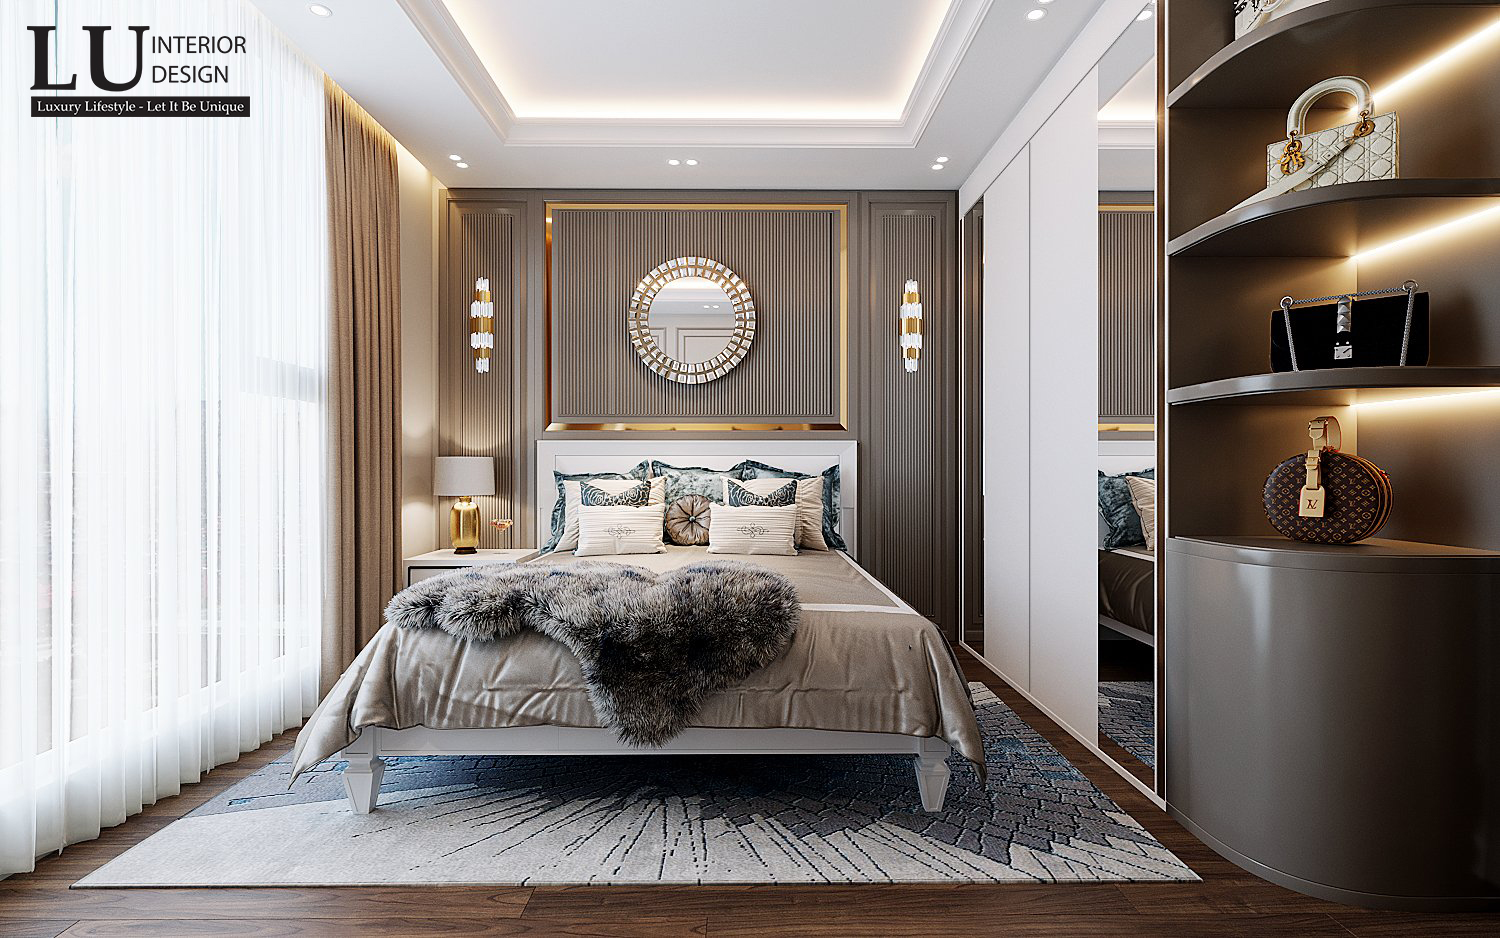 Thiết kế nội thất phòng ngủ master từ giường ngủ, kệ tivi, bàn trang điểm hay tủ áo đều được bố trí hài hòa, ngăn nắp và có tính kết nối với nhau, cực kỳ tiện dụng - Thiết kế căn hộ Saigon Royal bởi LU Design.